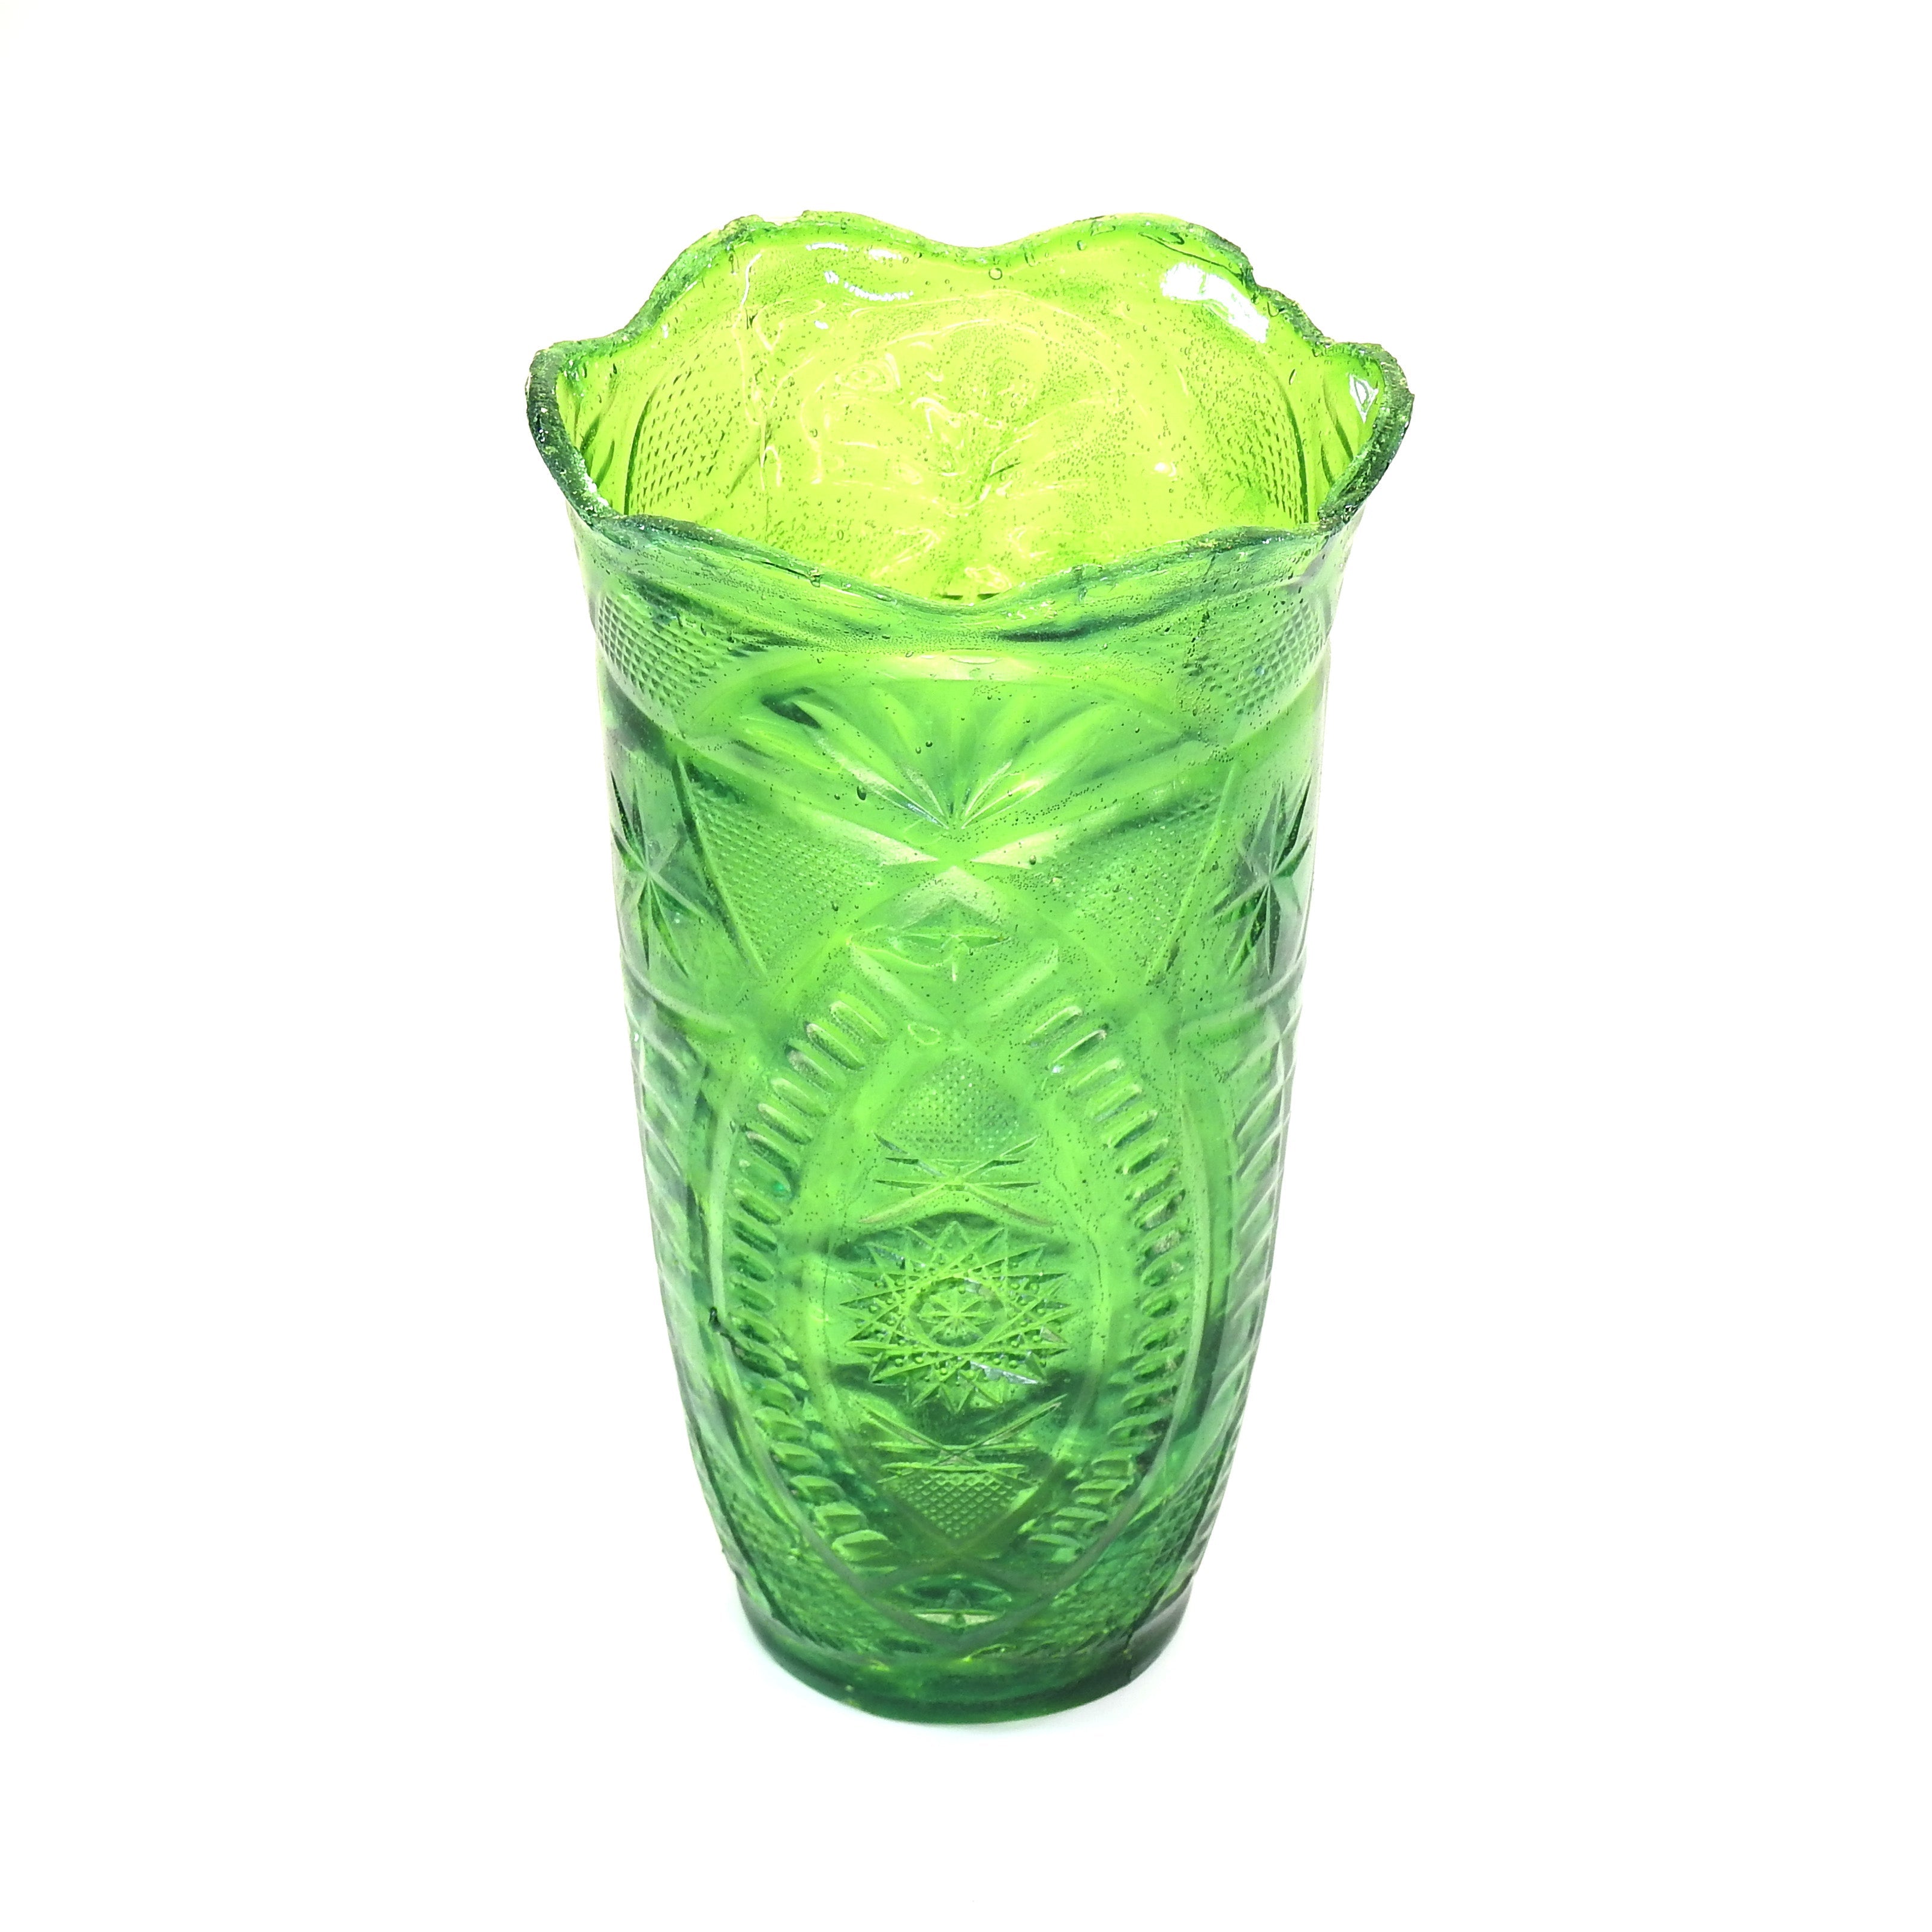 SMASHProps Breakaway Cut Crystal Vase - LIGHT GREEN translucent - Light Green,Translucent